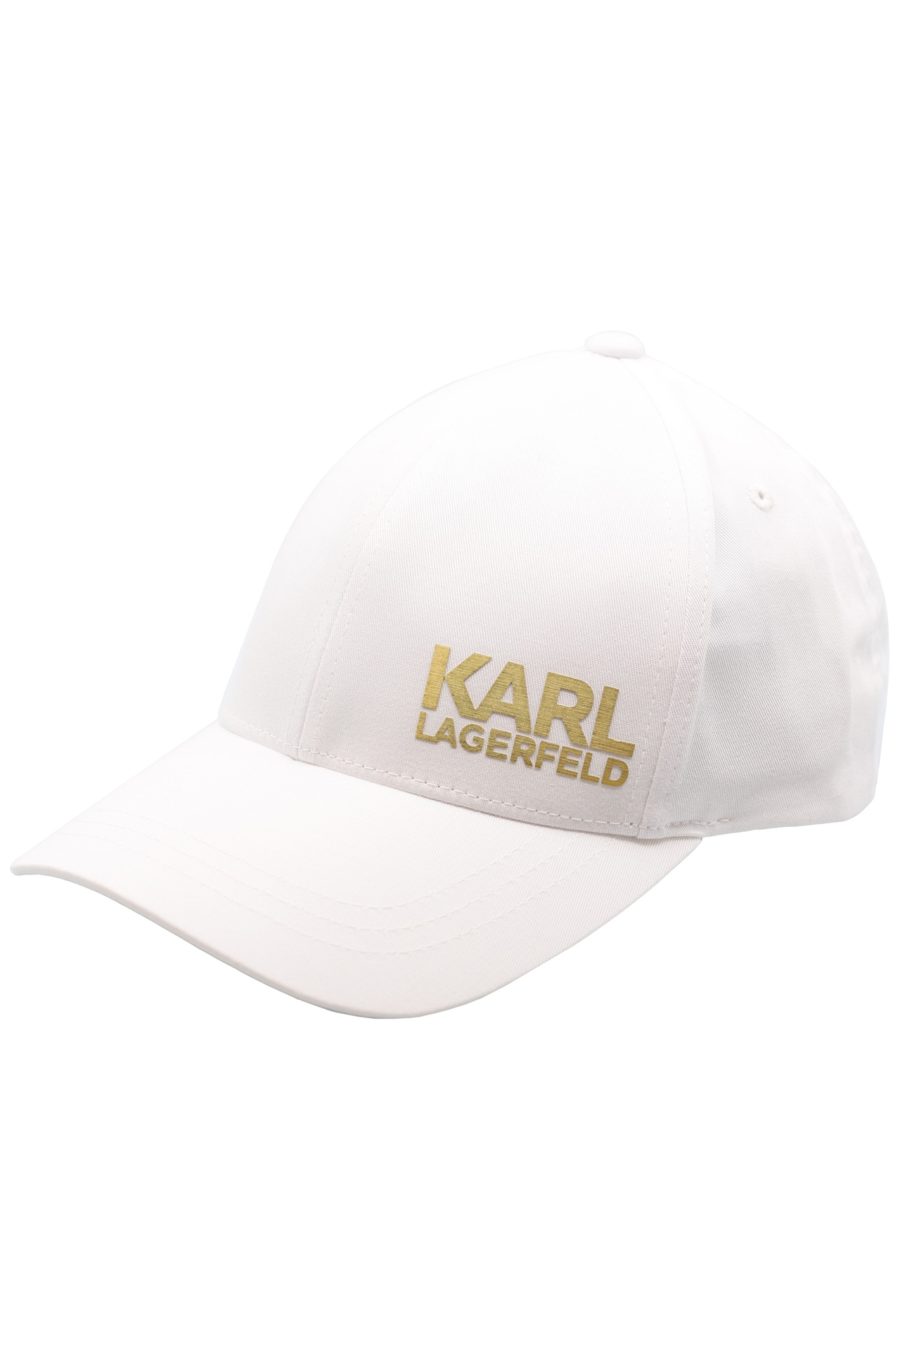 Gorra blanca con logo dorado "Karl Legerfeld" - eae0c23135dbb793cd228dfcdd72b7c1e031bd19